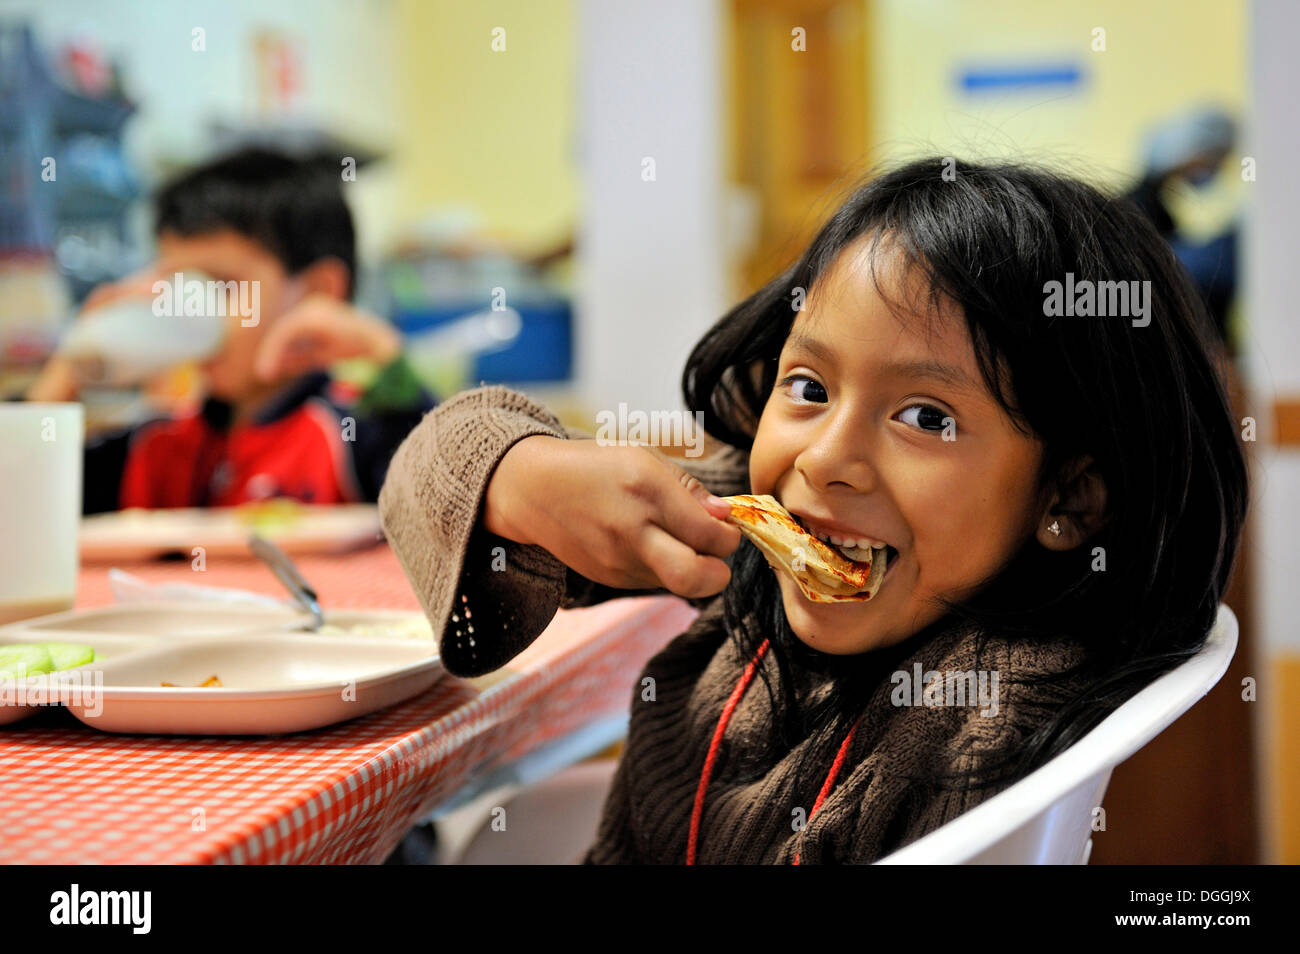 Girl eating a tortilla, Puebla, Mexique, Amérique Centrale Banque D'Images